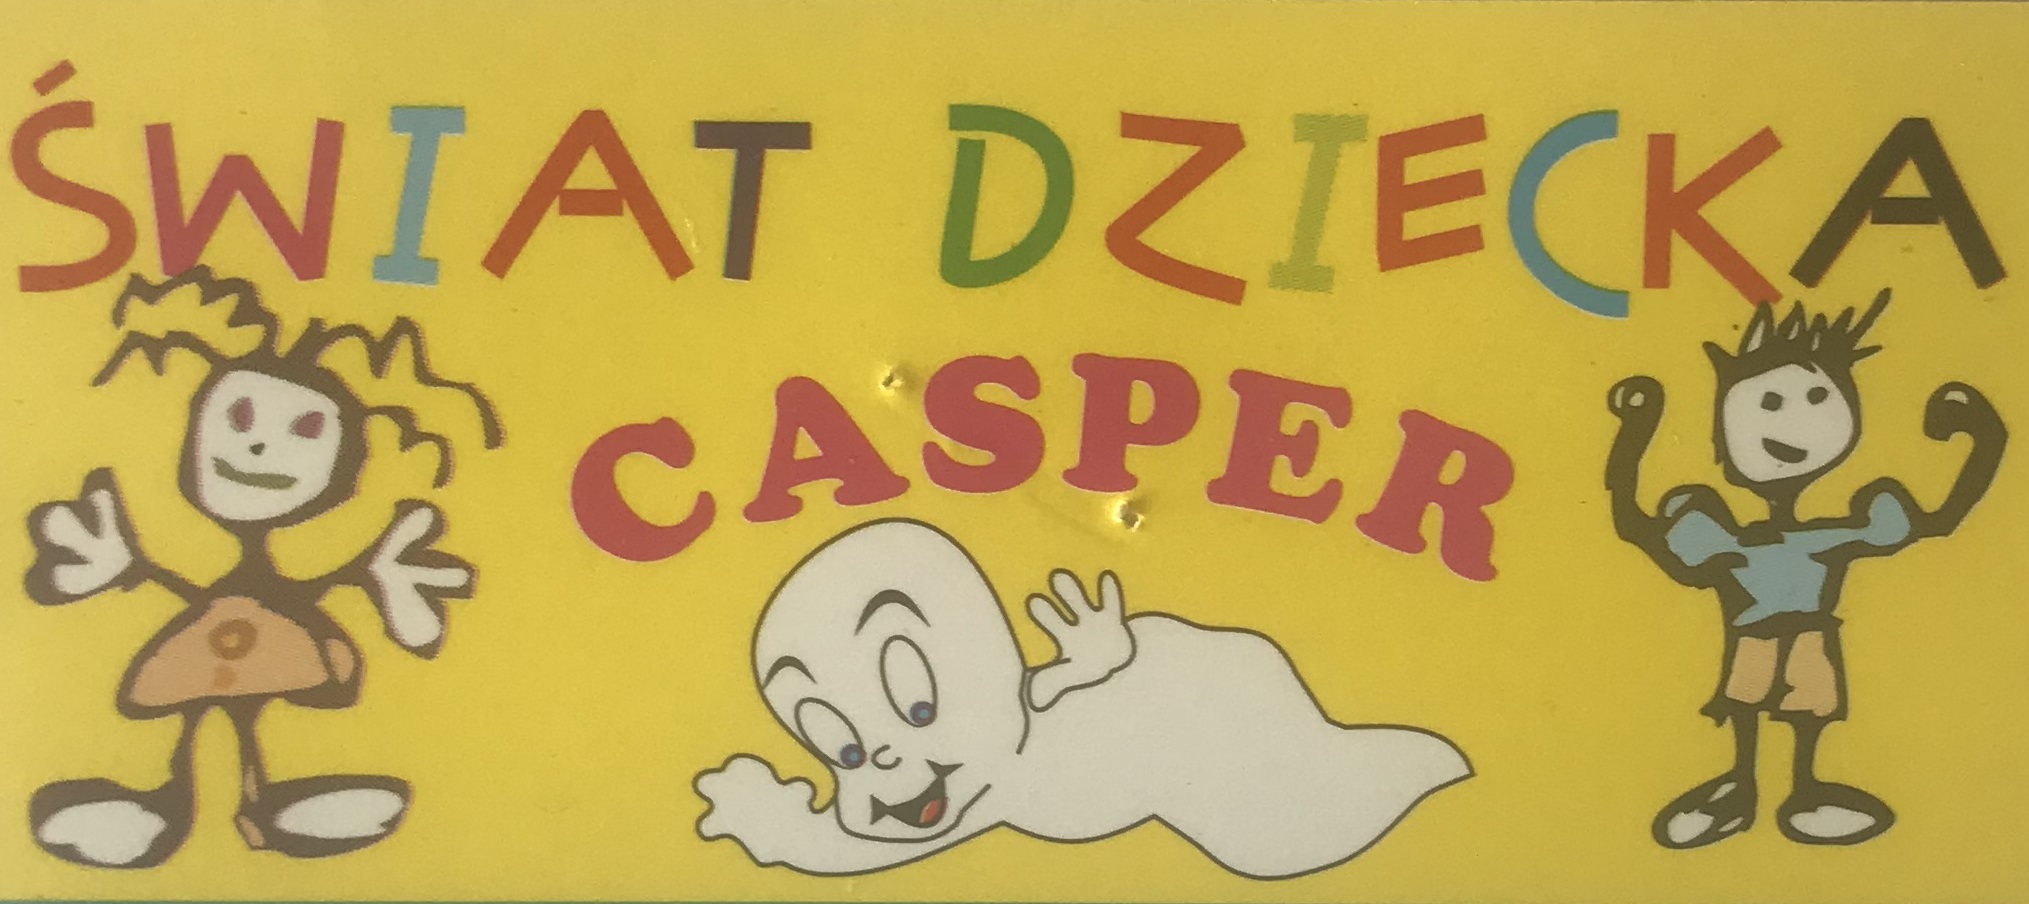 Casper swiat dziecka